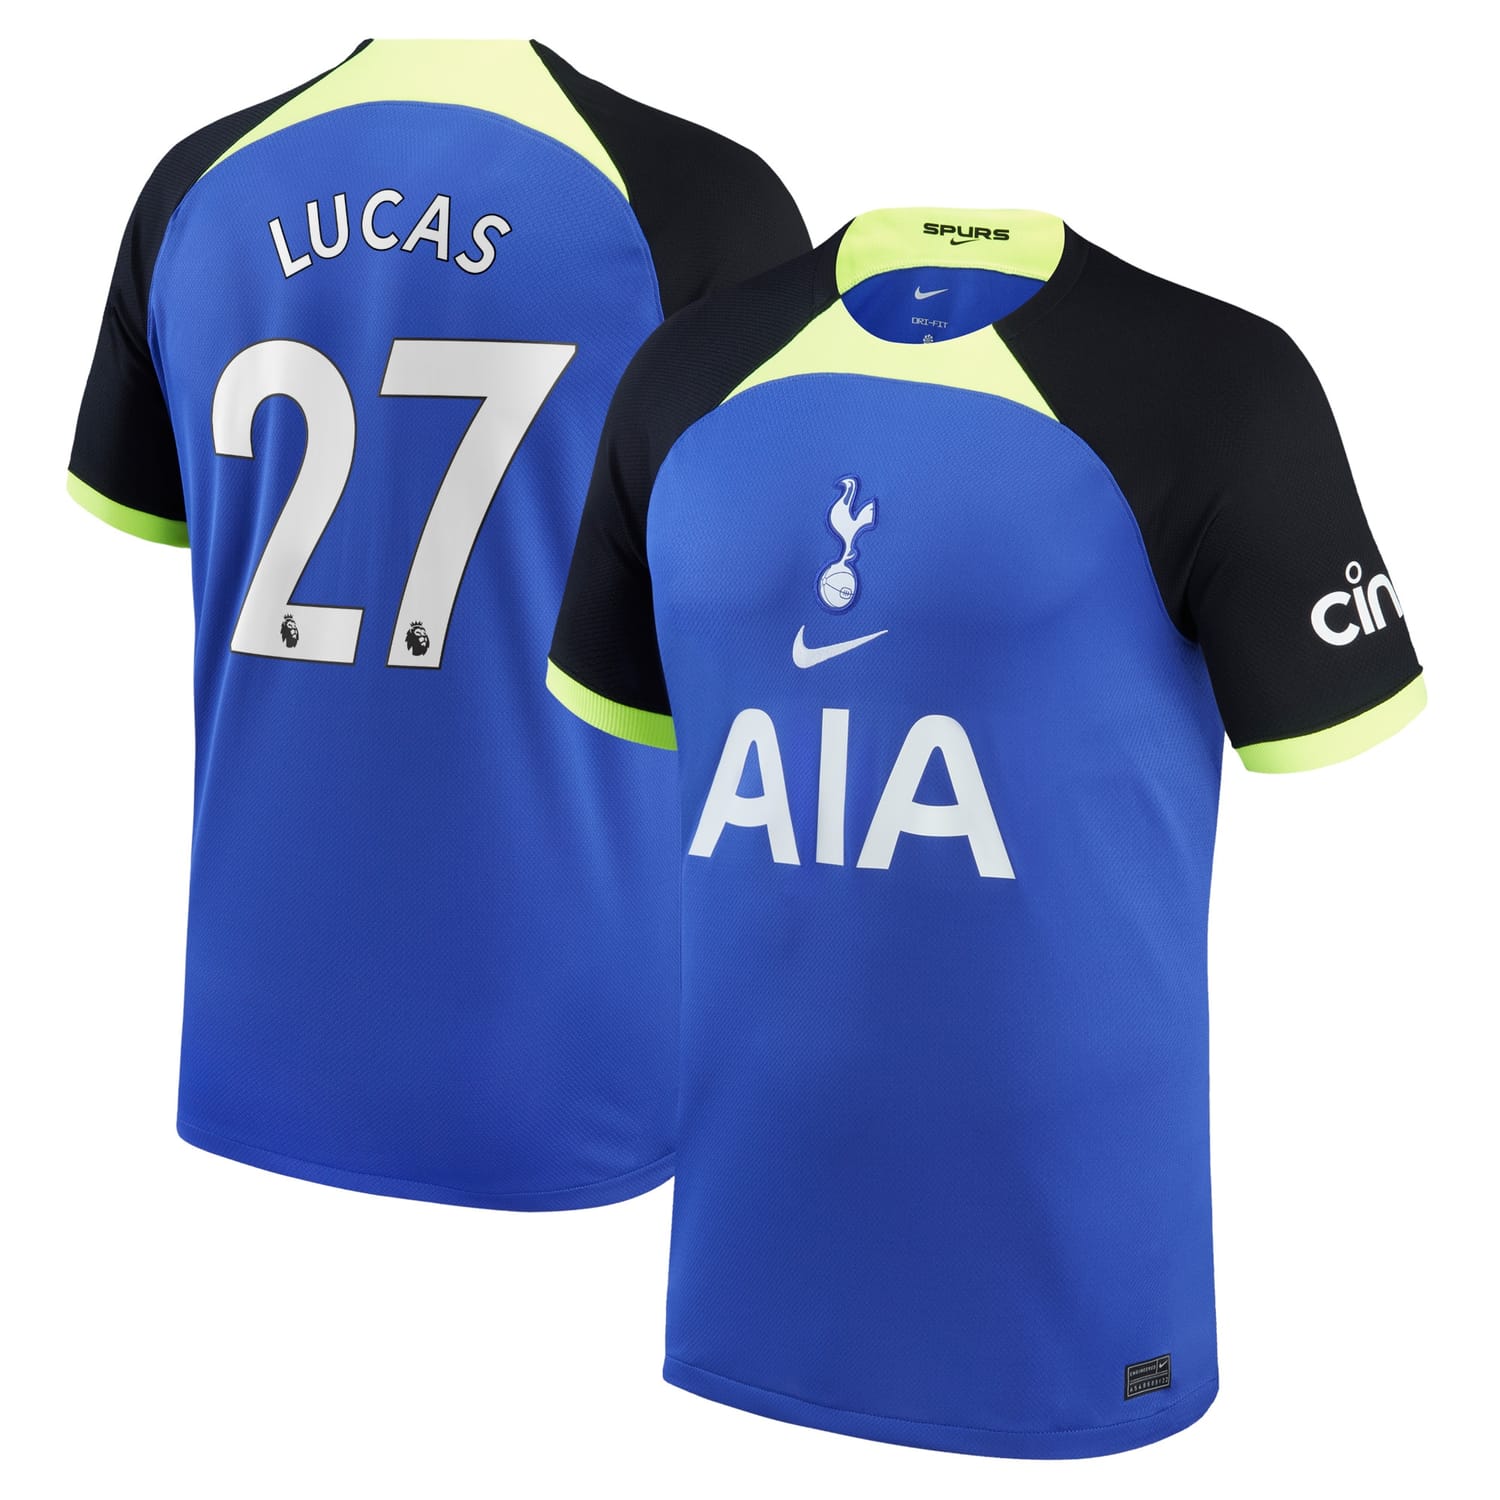 Premier League Tottenham Hotspur Away Jersey Shirt 2022-23 player Lucas Hernandez 27 printing for Men